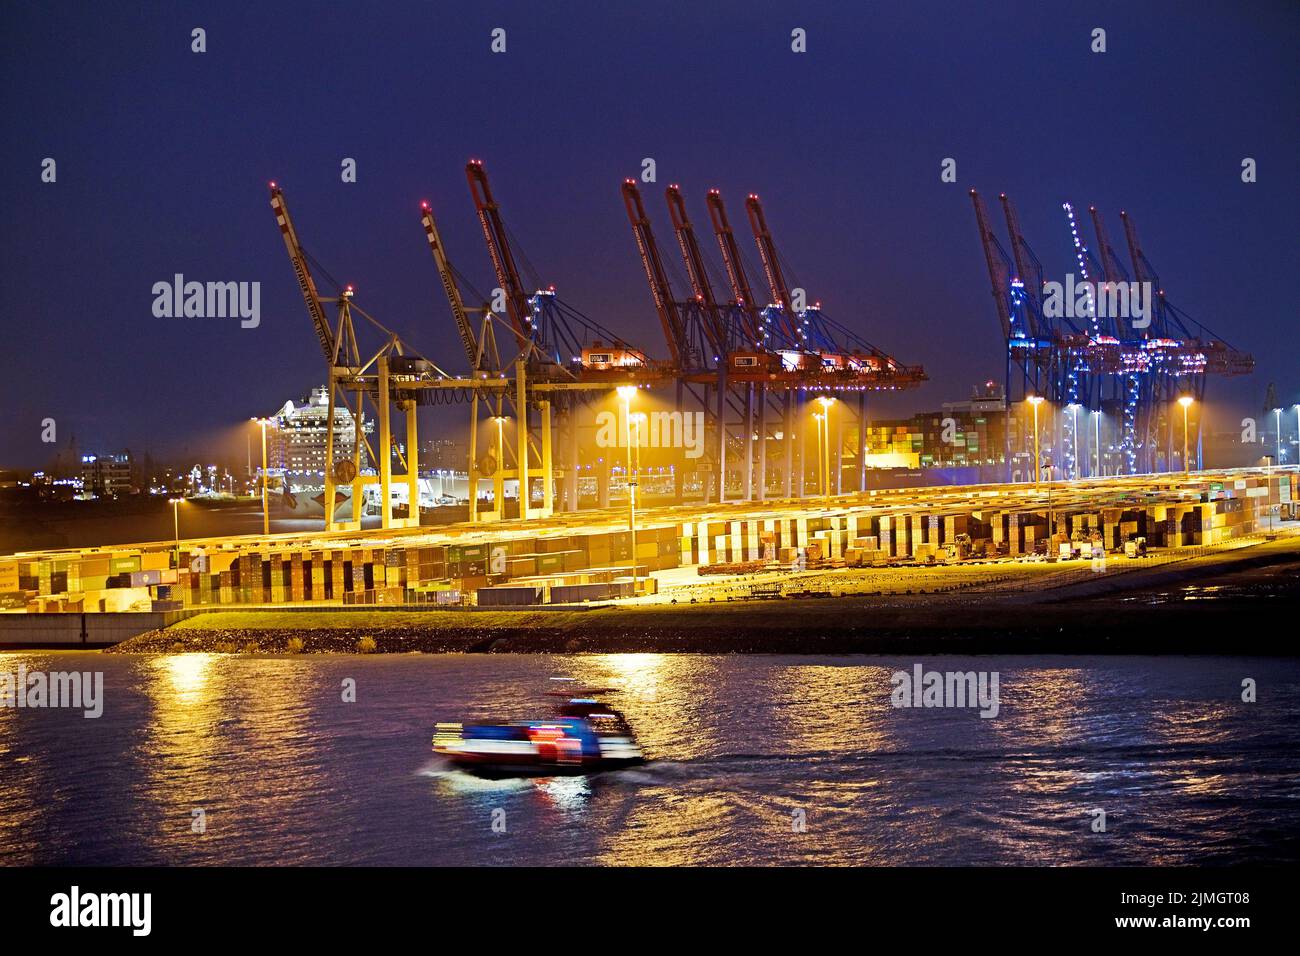 Grúas de carga en la terminal de contenedores de Tollerort por la noche, puerto de Hamburgo, Alemania Foto de stock